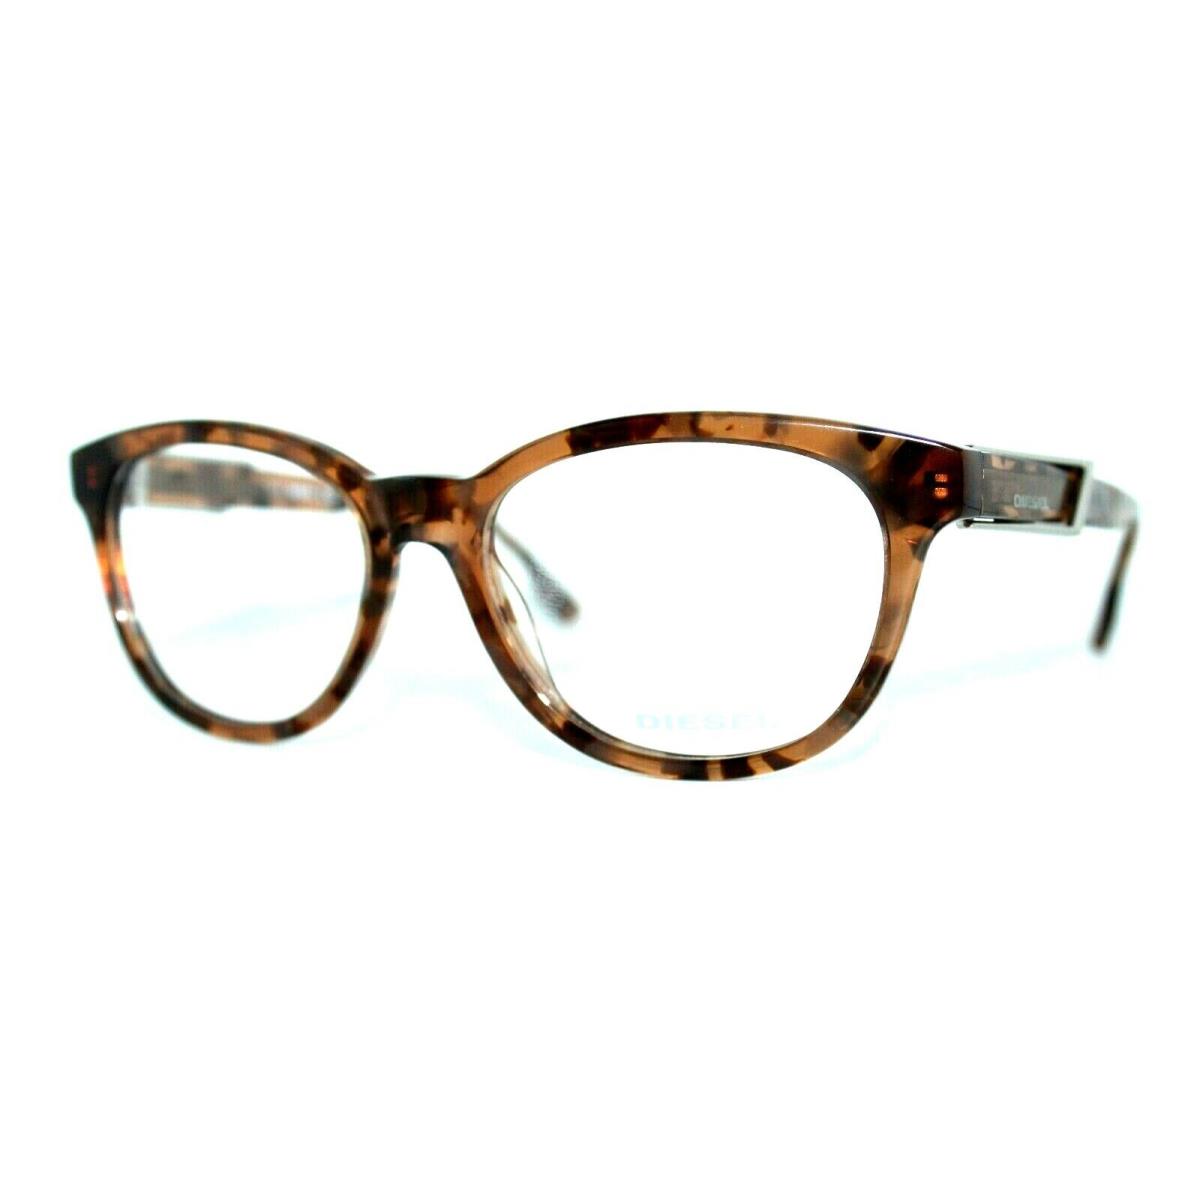 Diesel DL5112 055 Havana Eyeglasses Frames 52-16-145MM W/case